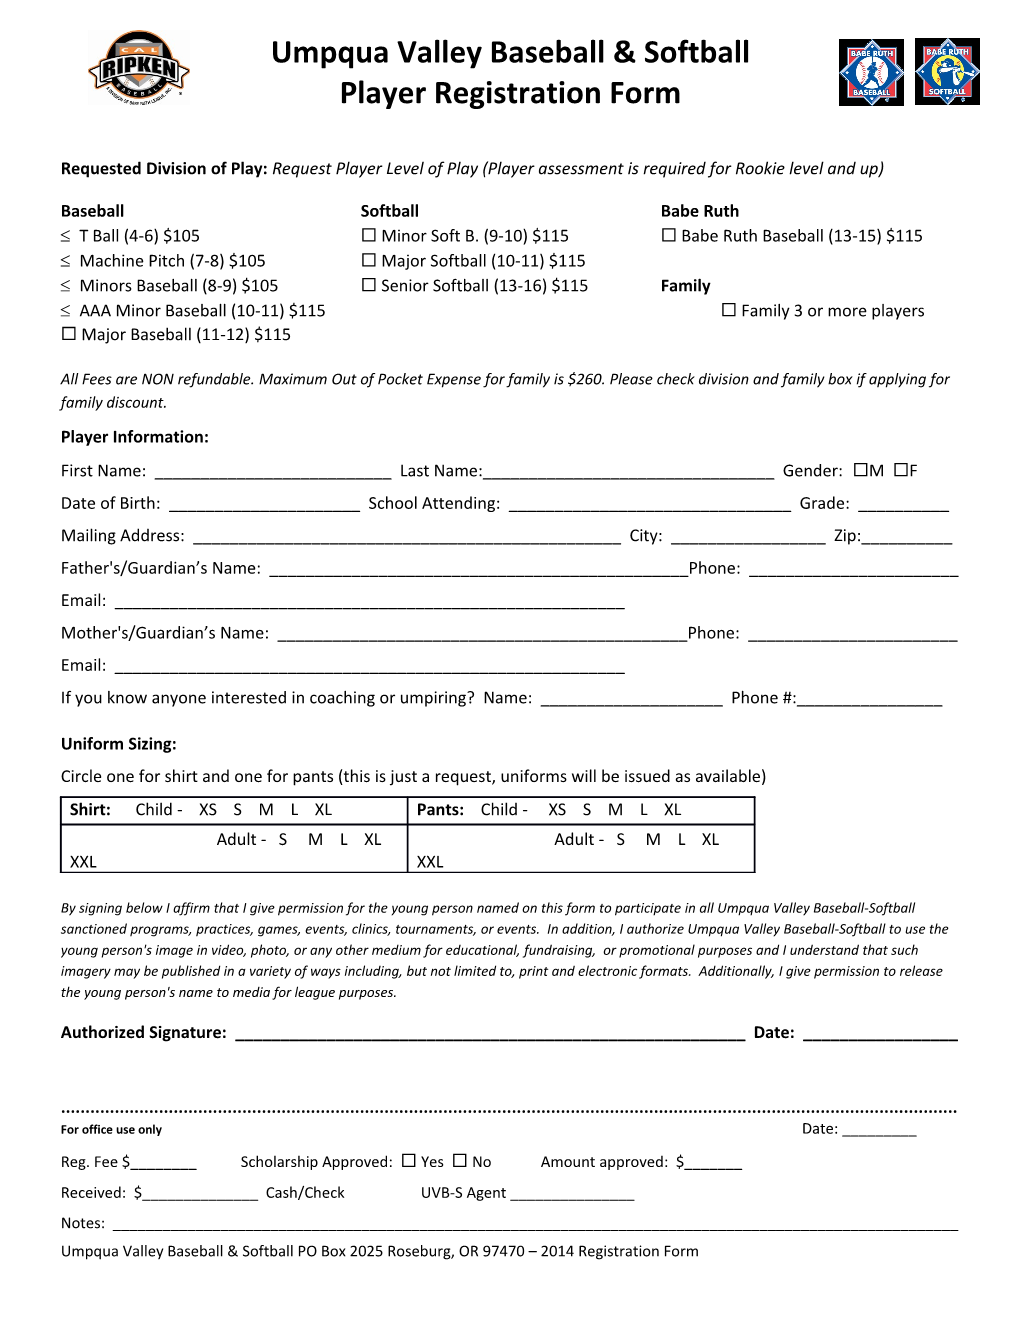 2014 Umpqua Valley Cal Ripken Registration Form